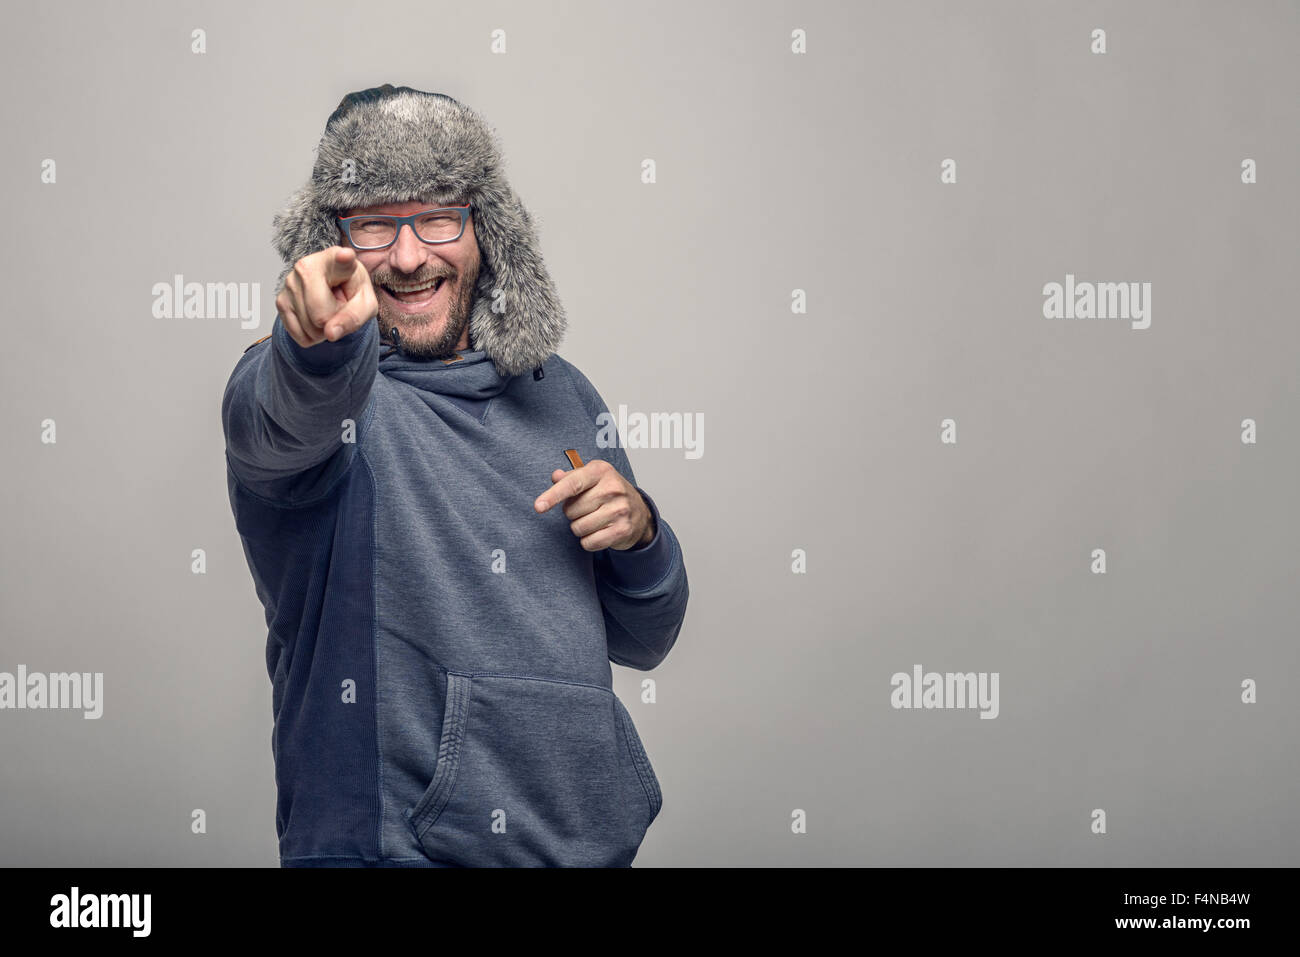 Lachend jovialen Mann mit Brille und einem pelzigen Winter Hut stehen zeigt auf die Kamera mit einem spielerischen Ausdruck über grau Stockfoto